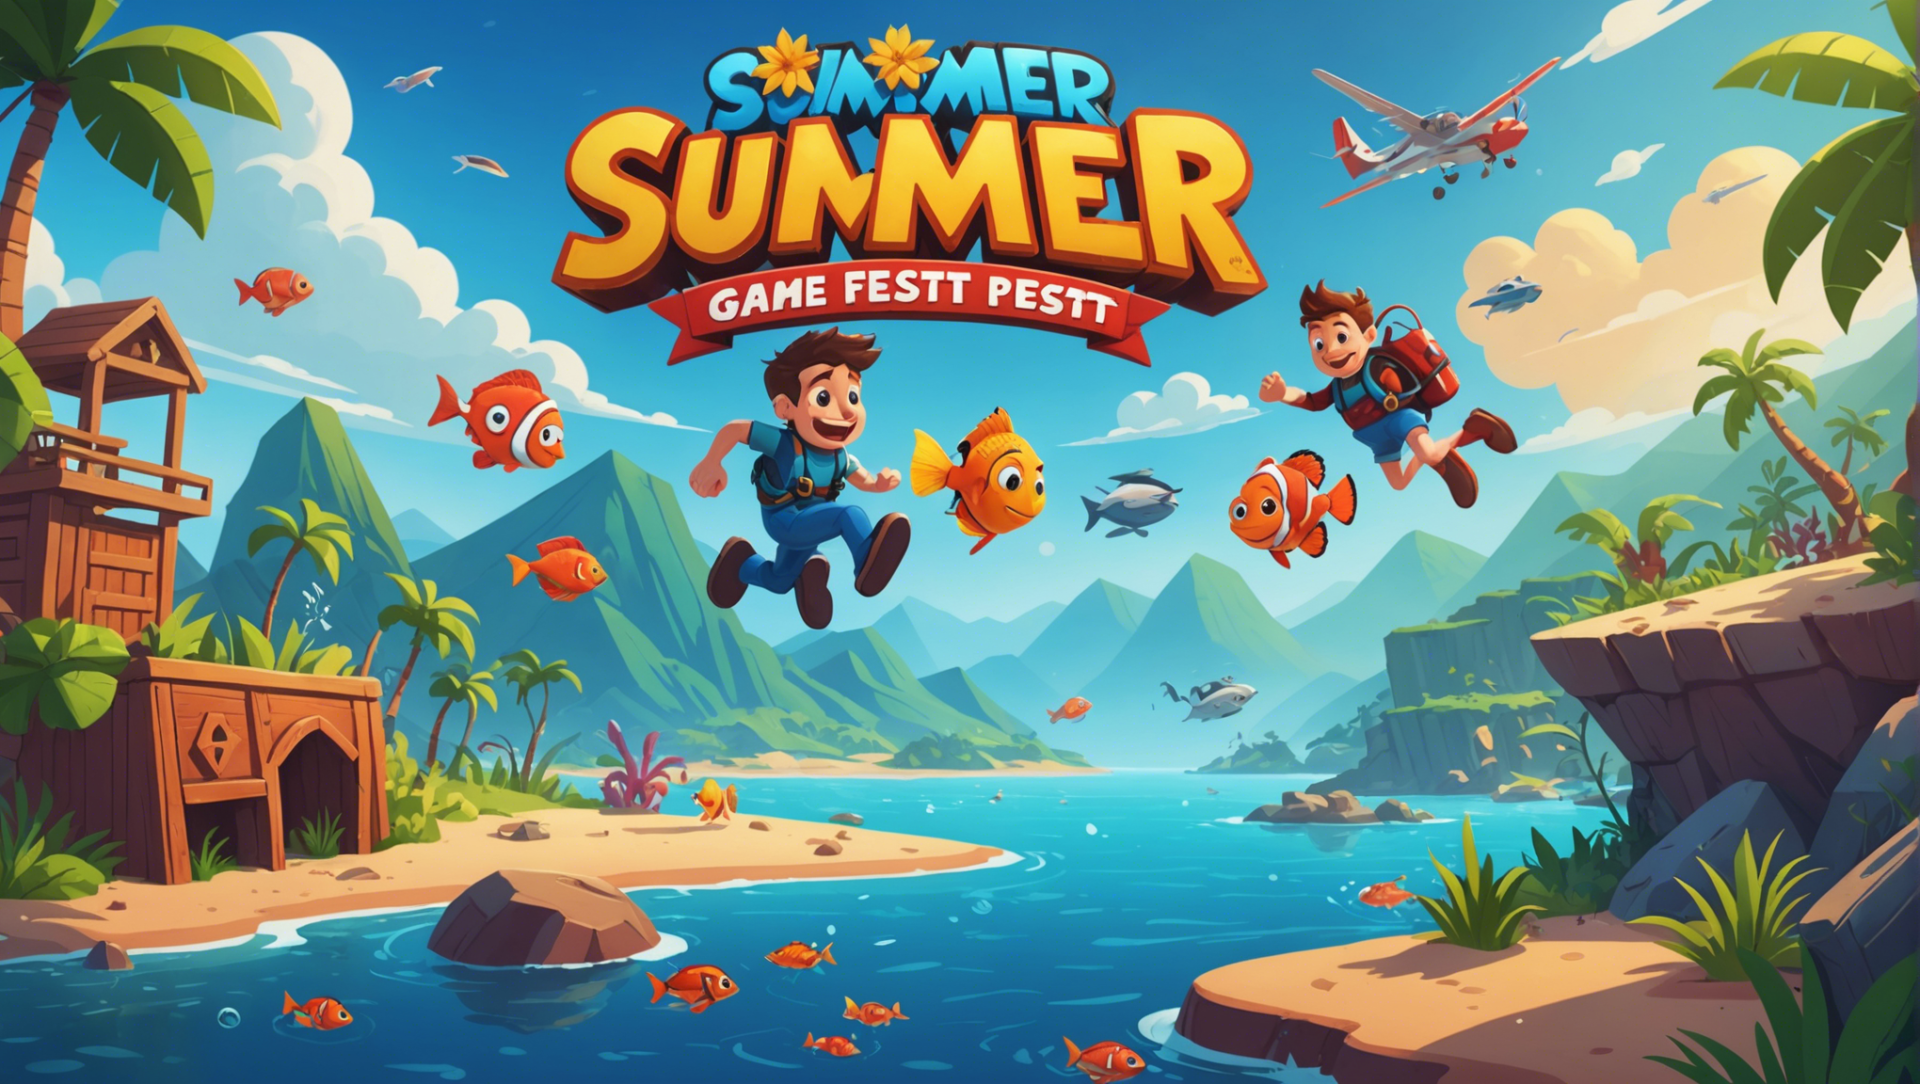 découvrez l'univers du jeu vidéo avec summer game fest malgré un contexte morose. plongez dans une expérience immersive et divertissante.